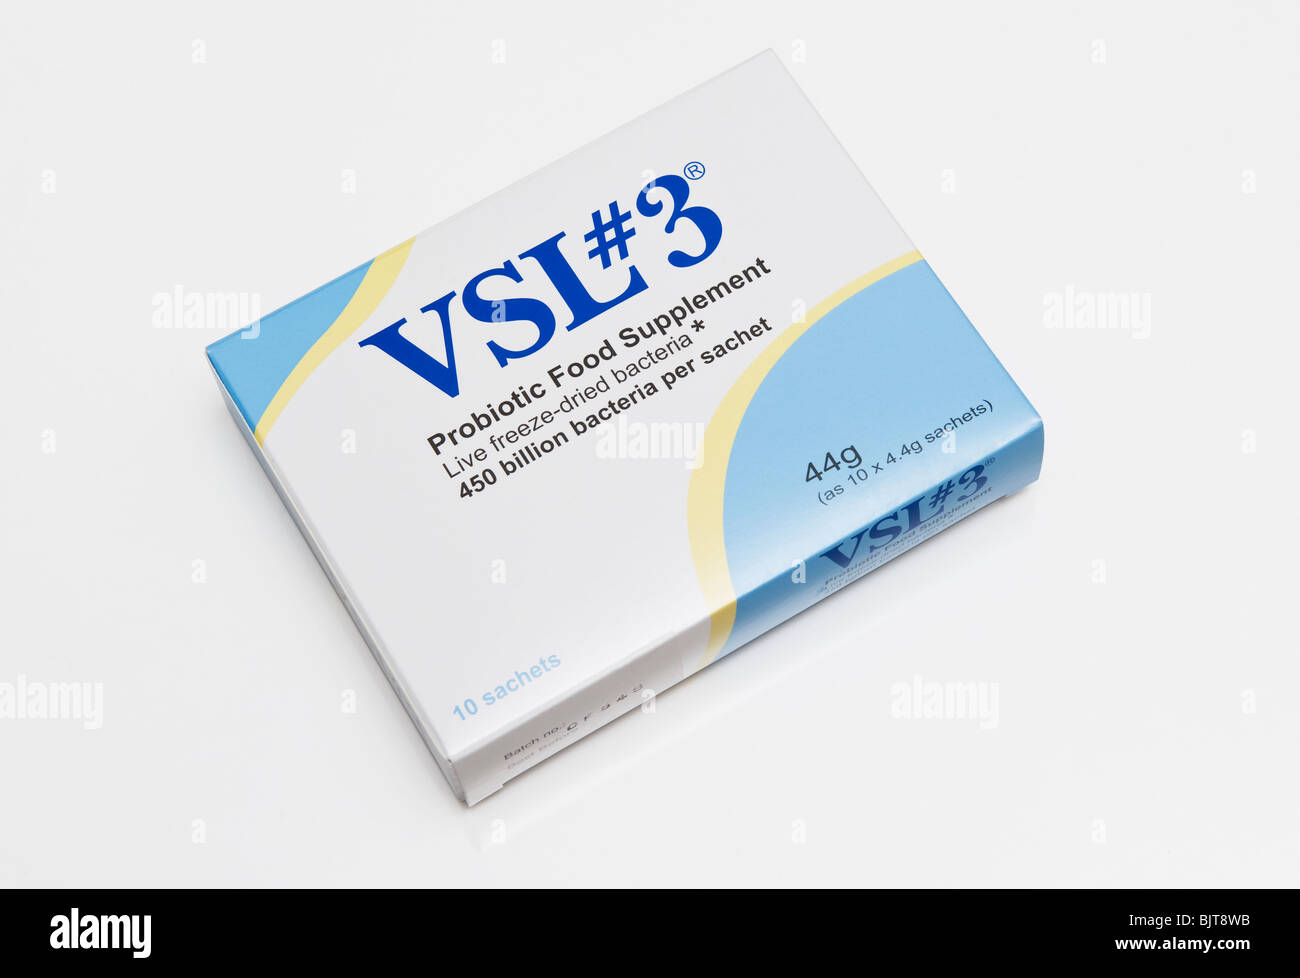 Scatola di imballaggio per la VSL#3 (VSL 3). Una batteri di acido lattico probiotico di integratore alimentare Foto Stock